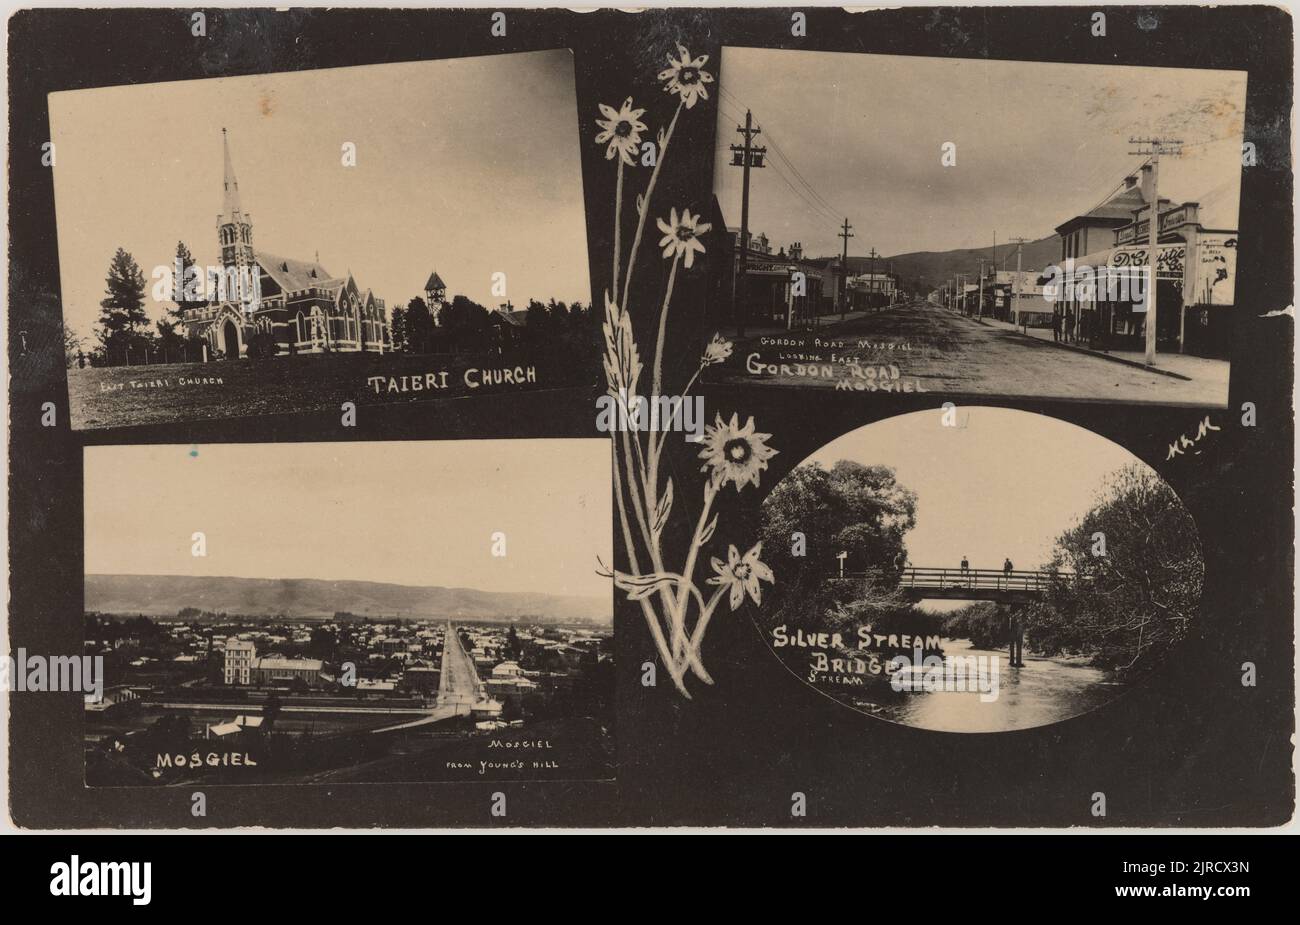 Ansichten von Mosgiel, Taieri Church und Silverstream Bridge, 1904-1912, Neuseeland, von Muir & Moodie. Stockfoto